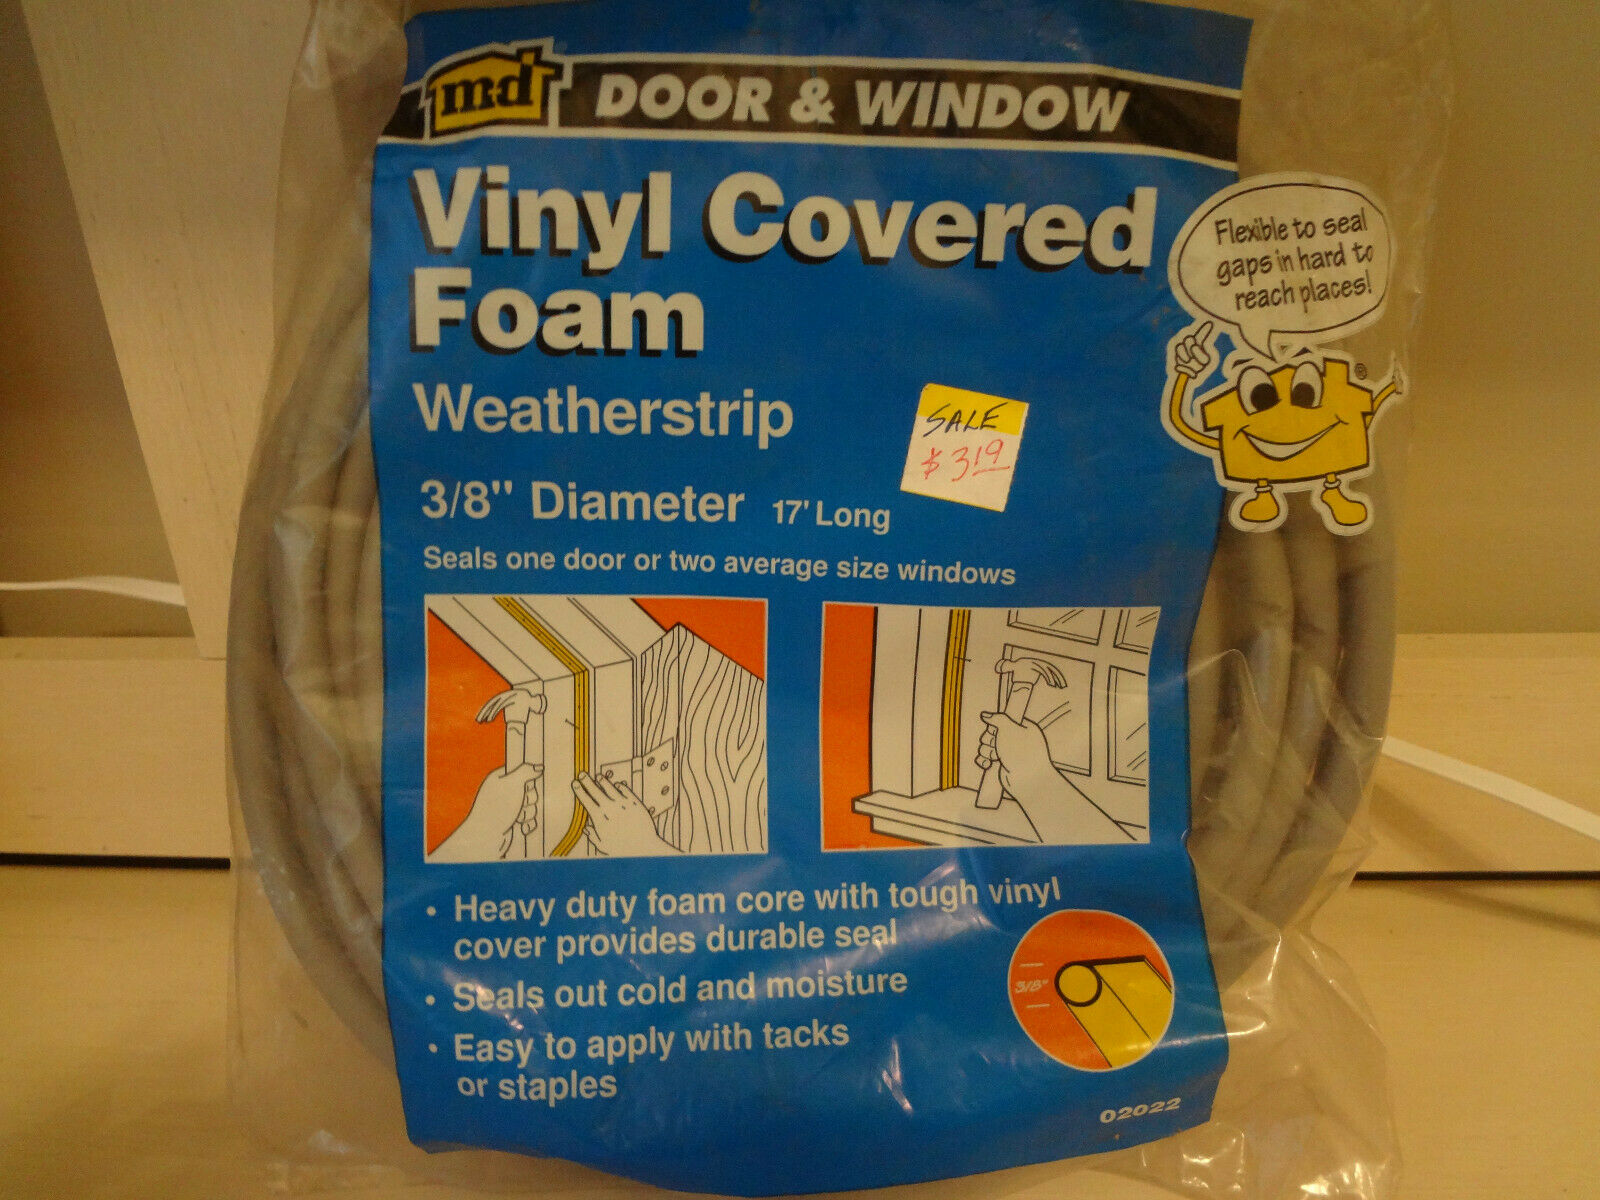 Md Door & Window Vinyl Covered Foam Weatherstrip 3/8" Diameter 17' Long #02022